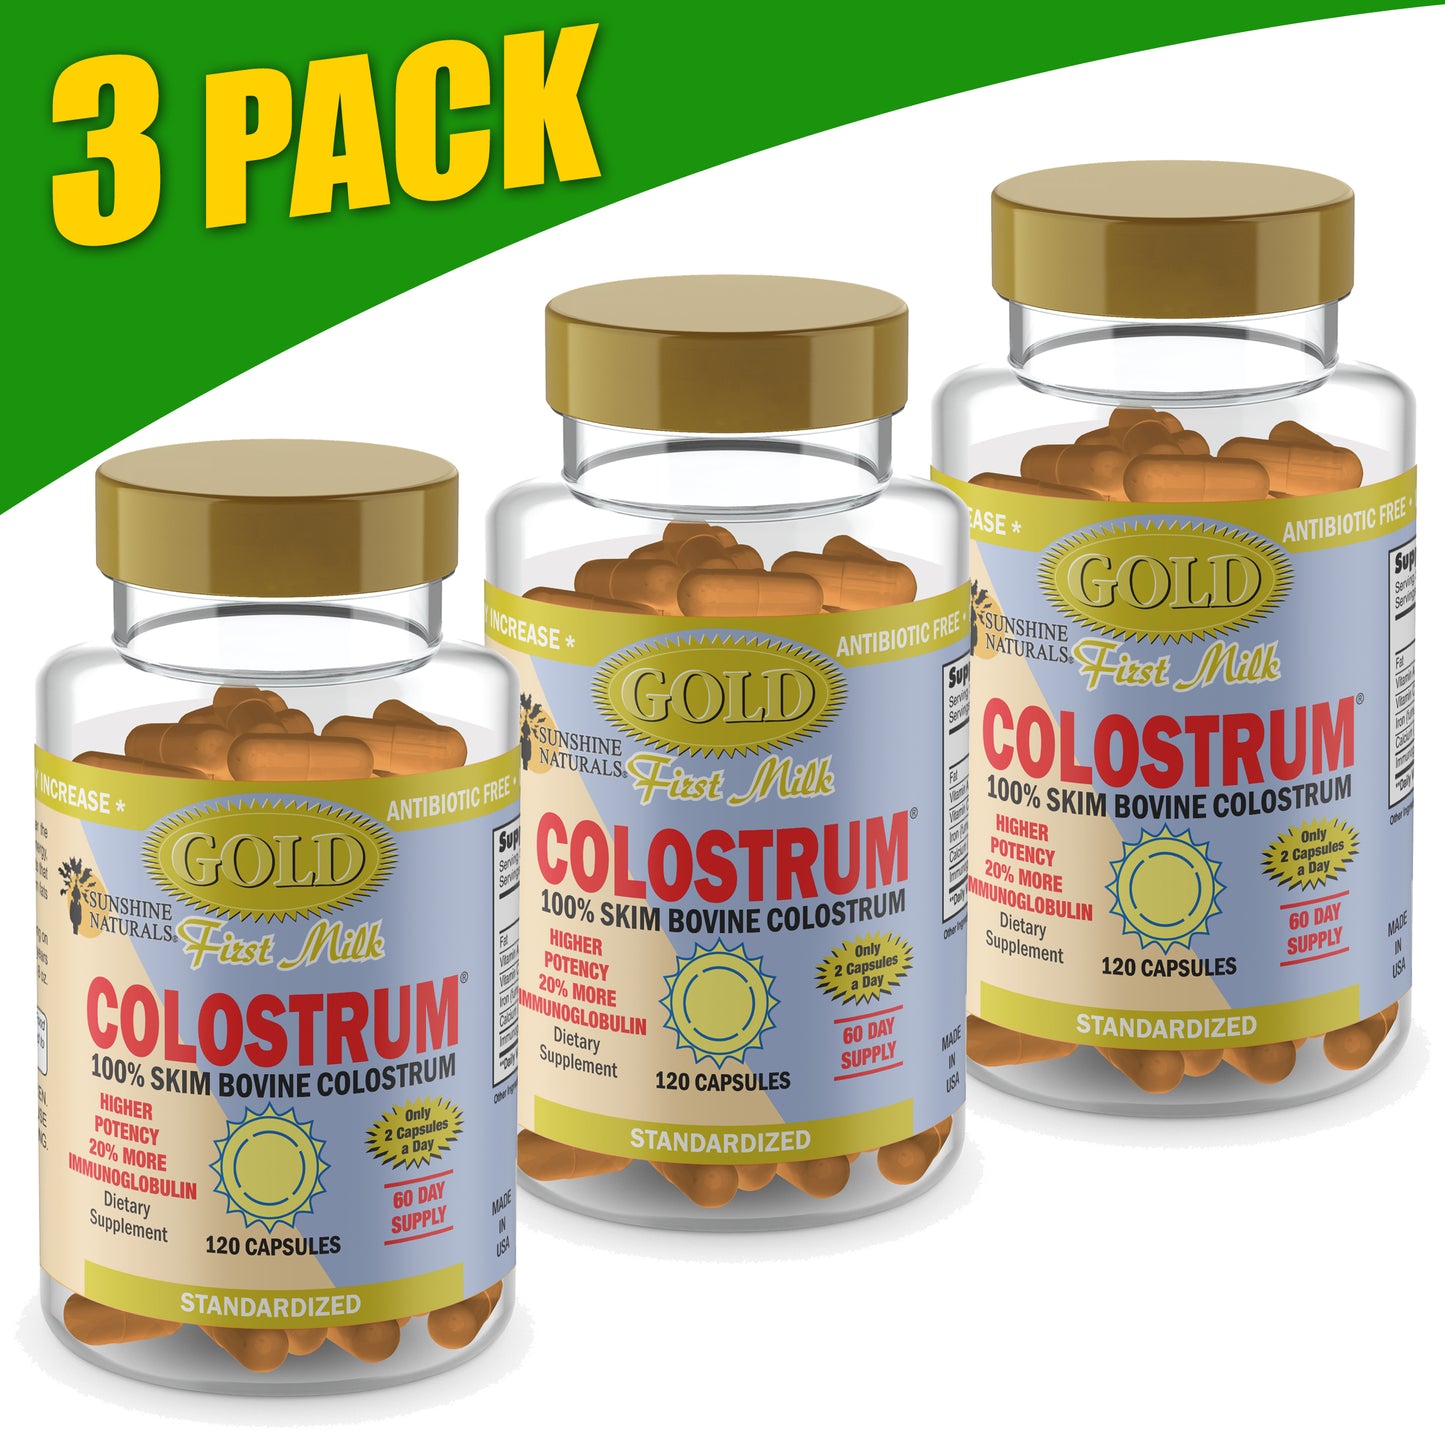 Colostrum GOLD First Milk 120 Capsules